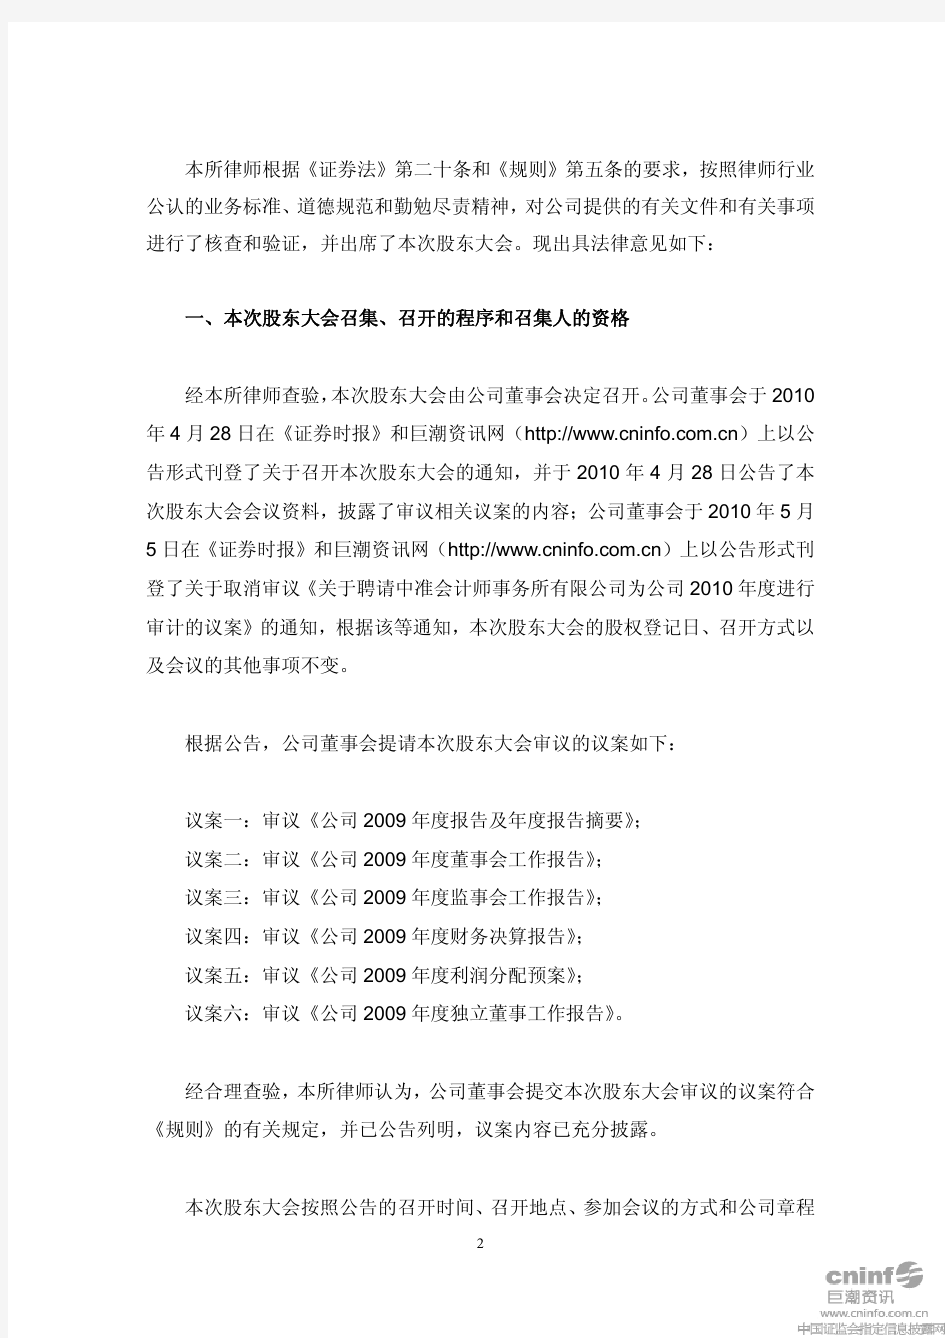 深圳新都酒店股份有限公司2009年度股东大会的法律意见书